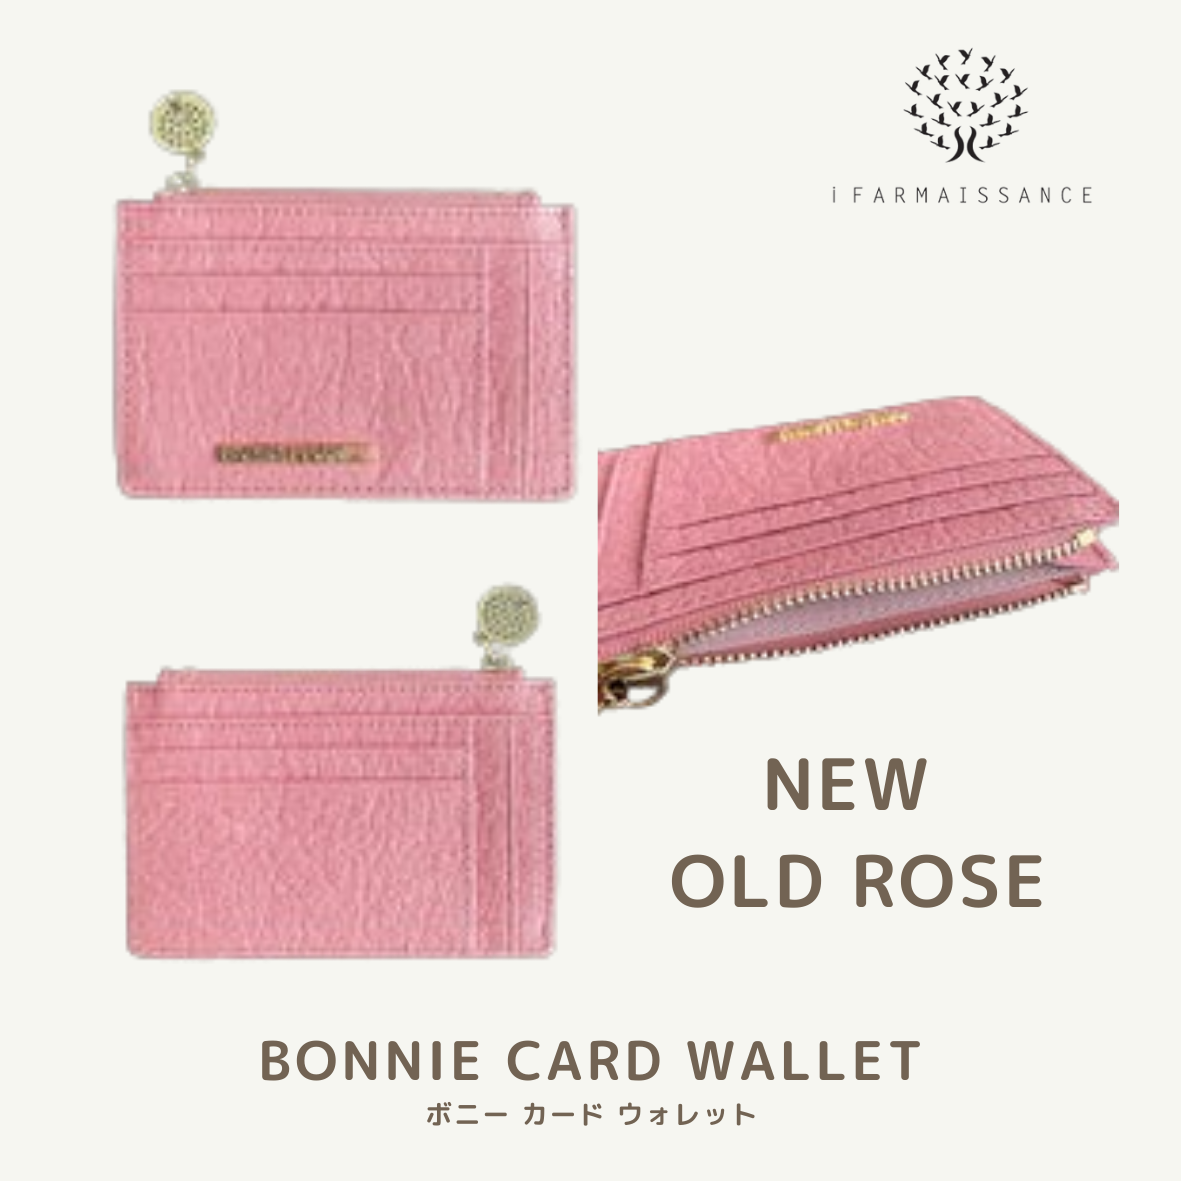 【パイナップルレザー】ボニー カード ウォレット～BONNIE CARD WALLET オールド ローズ  / OLD ROSE